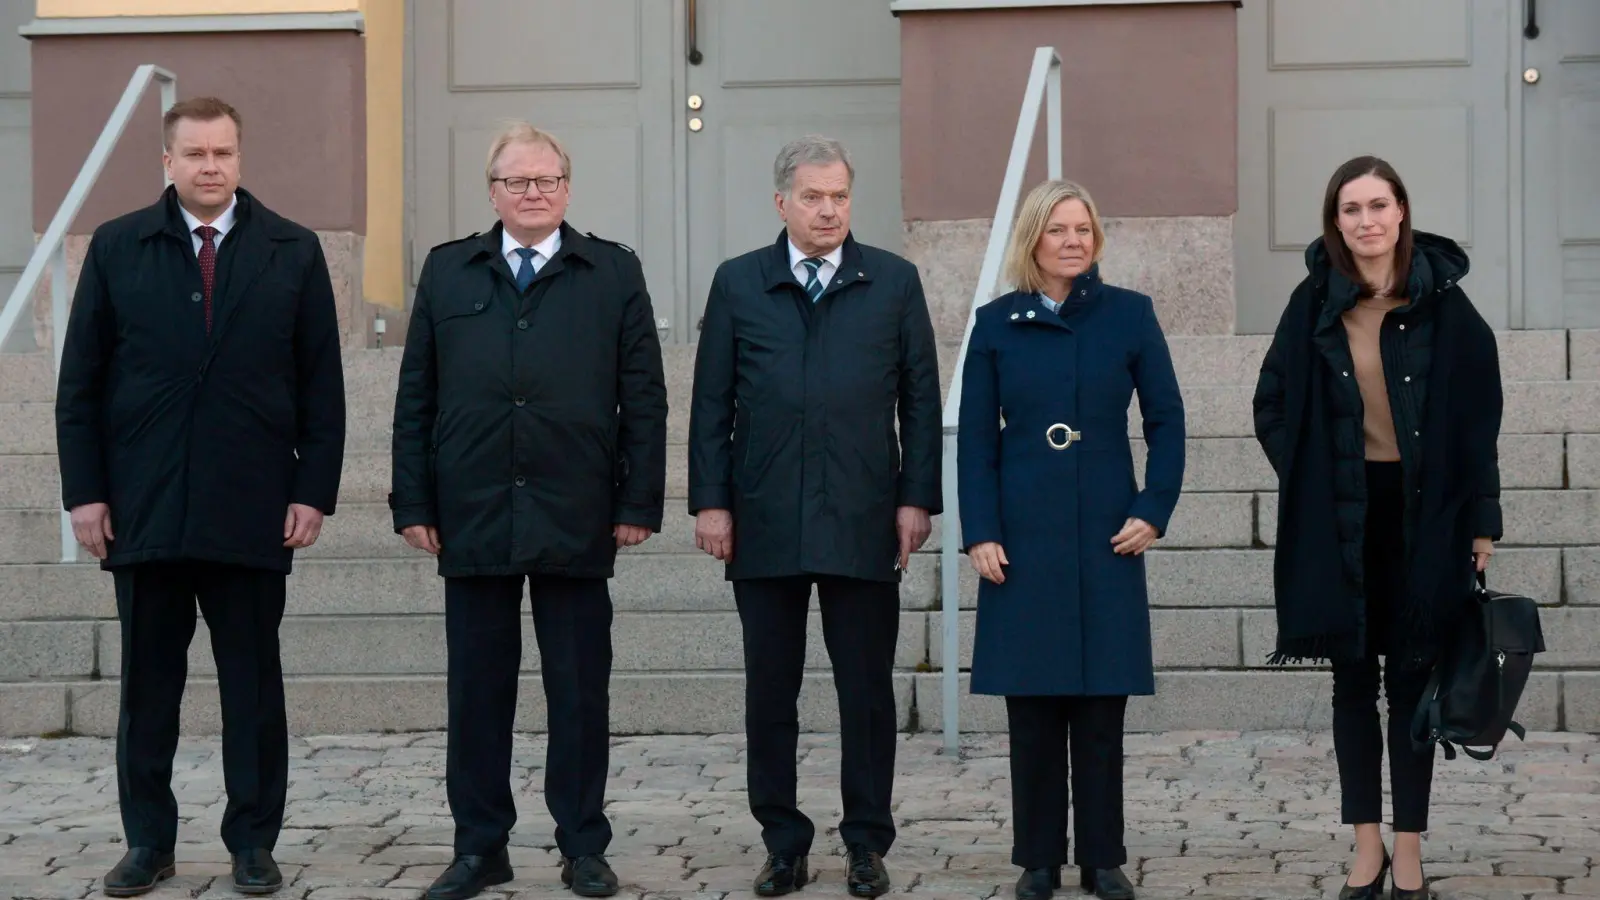 Sauli Niinistö (M), Präsident von Finnland, Sanna Marin (r), Ministerpräsidentin von Finnland, und Antti Kaikkonen (l), Verteidigungsminister von Finnland, stehen vor einem gemeinsamen Treffen mit Magdalena Andersson (2.v.r), Ministerpräsidentin von Schweden, und Peter Hultqvist (2.v.l), Verteidigungsminister von Schweden, zusammen. (Foto: Mikko Stig/Lehtikuva/AP/dpa)